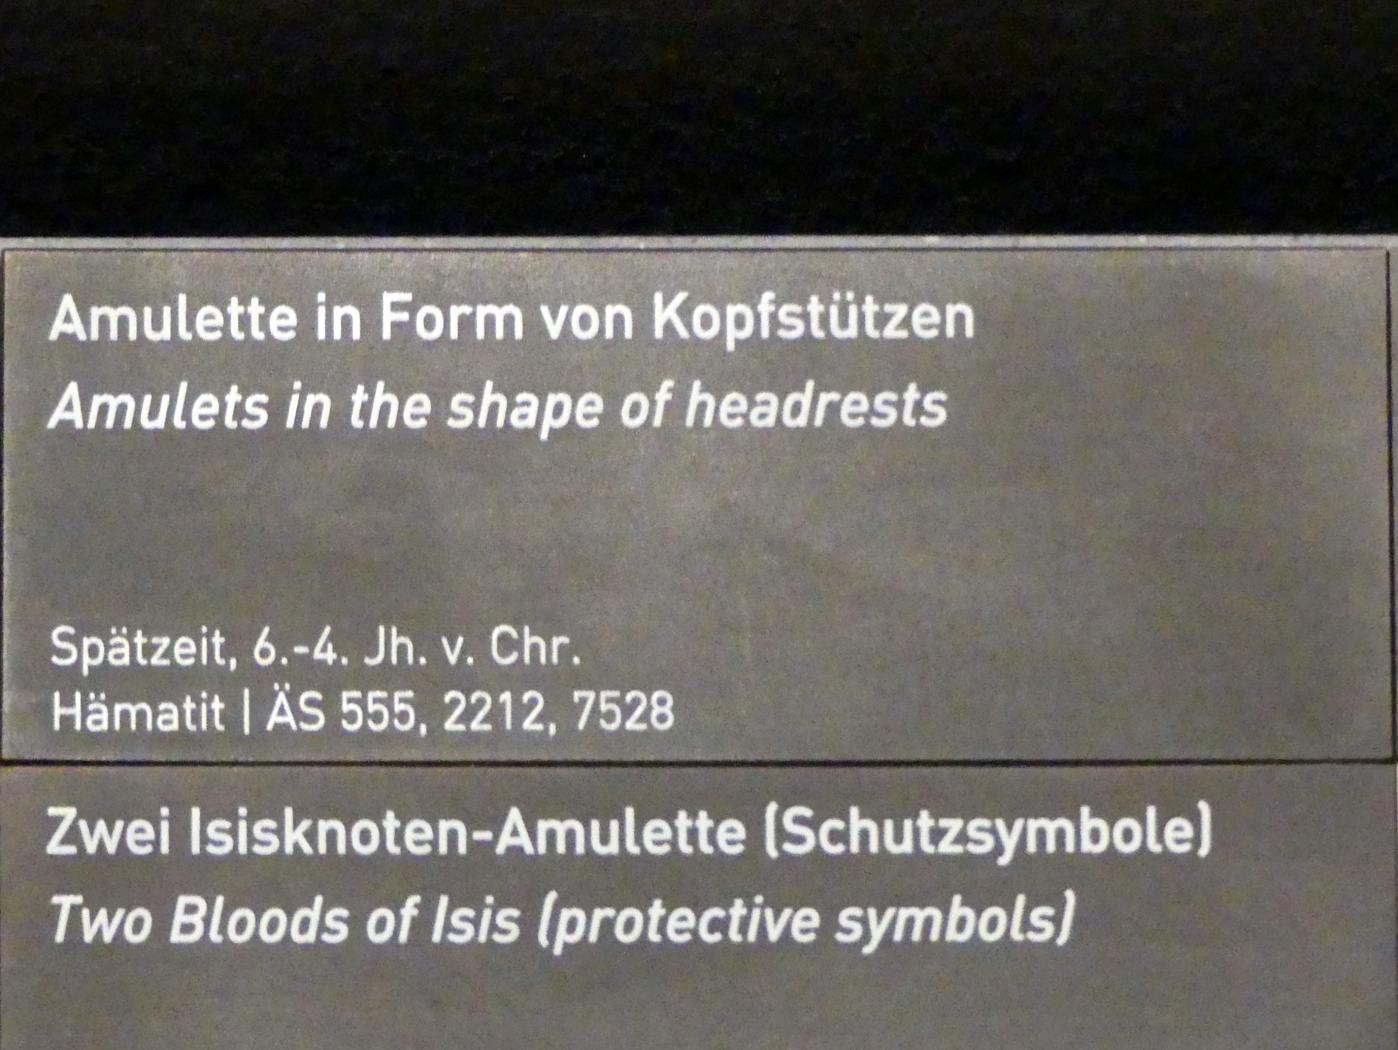 Amulette in Form von Kopfstützen, Spätzeit, 360 - 342 v. Chr., 600 - 300 v. Chr., Bild 3/3